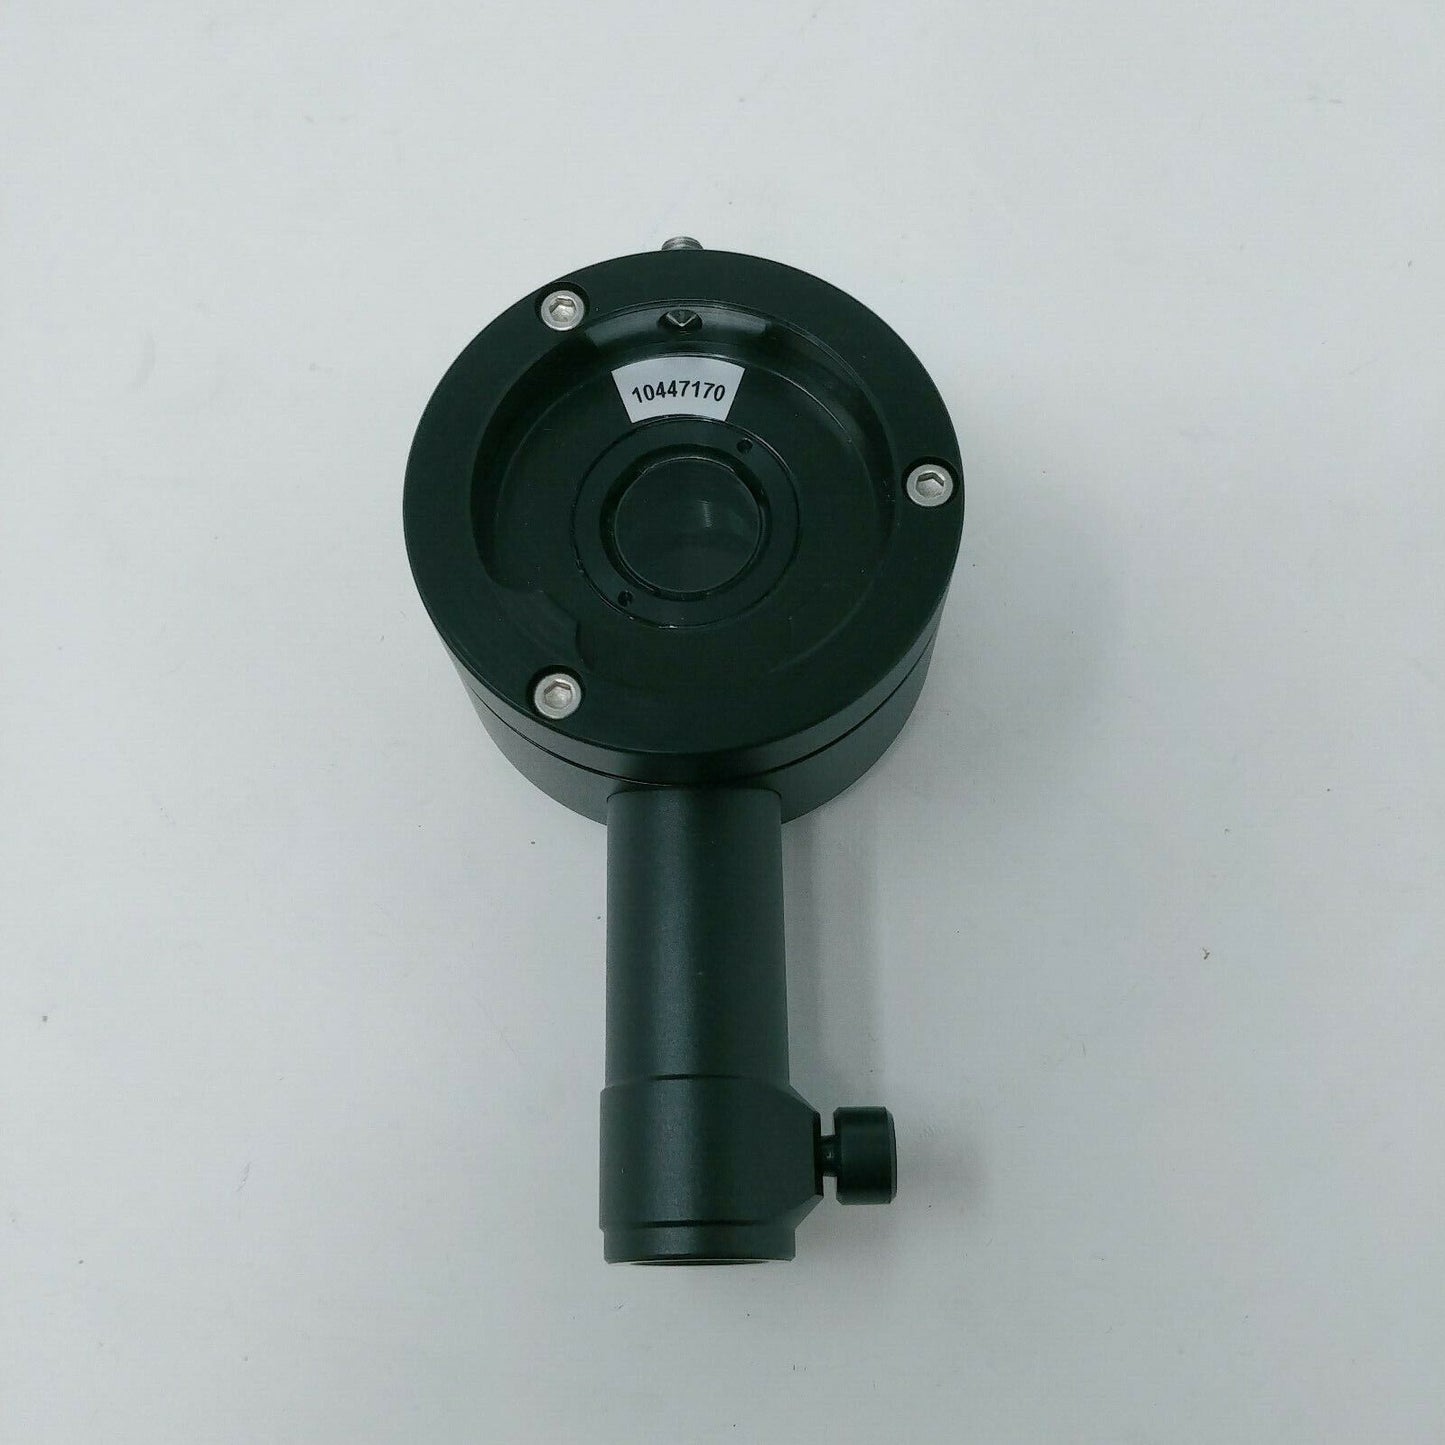 Leica Microscope Coaxial Illumination Z-series Z6 APO/Z16 APO 10447170 - microscopemarketplace